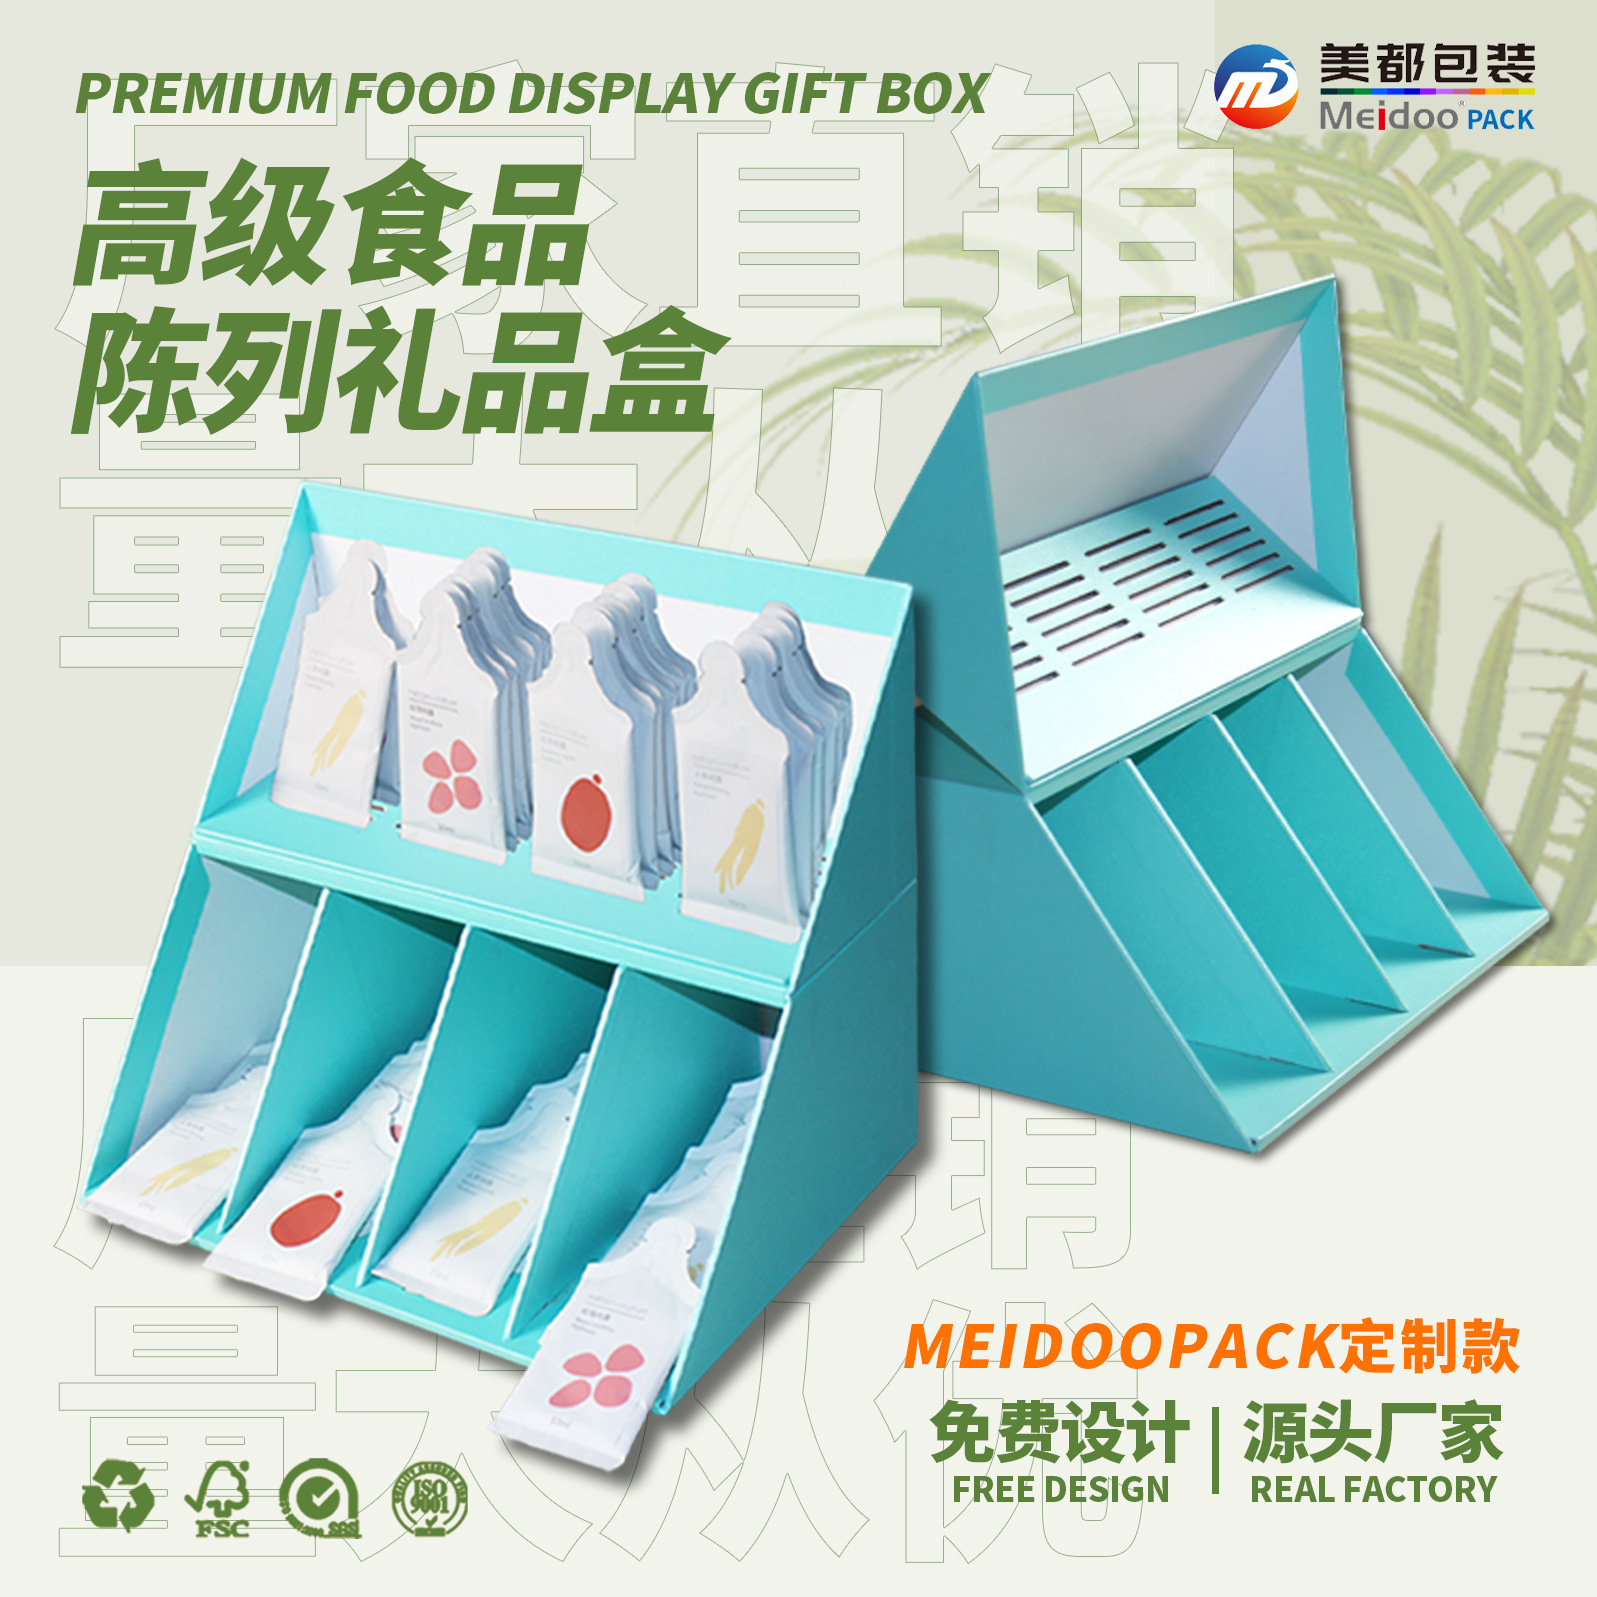 定制款化妆品手机茶叶电子产品休闲零食保健食品包装礼盒免费设计